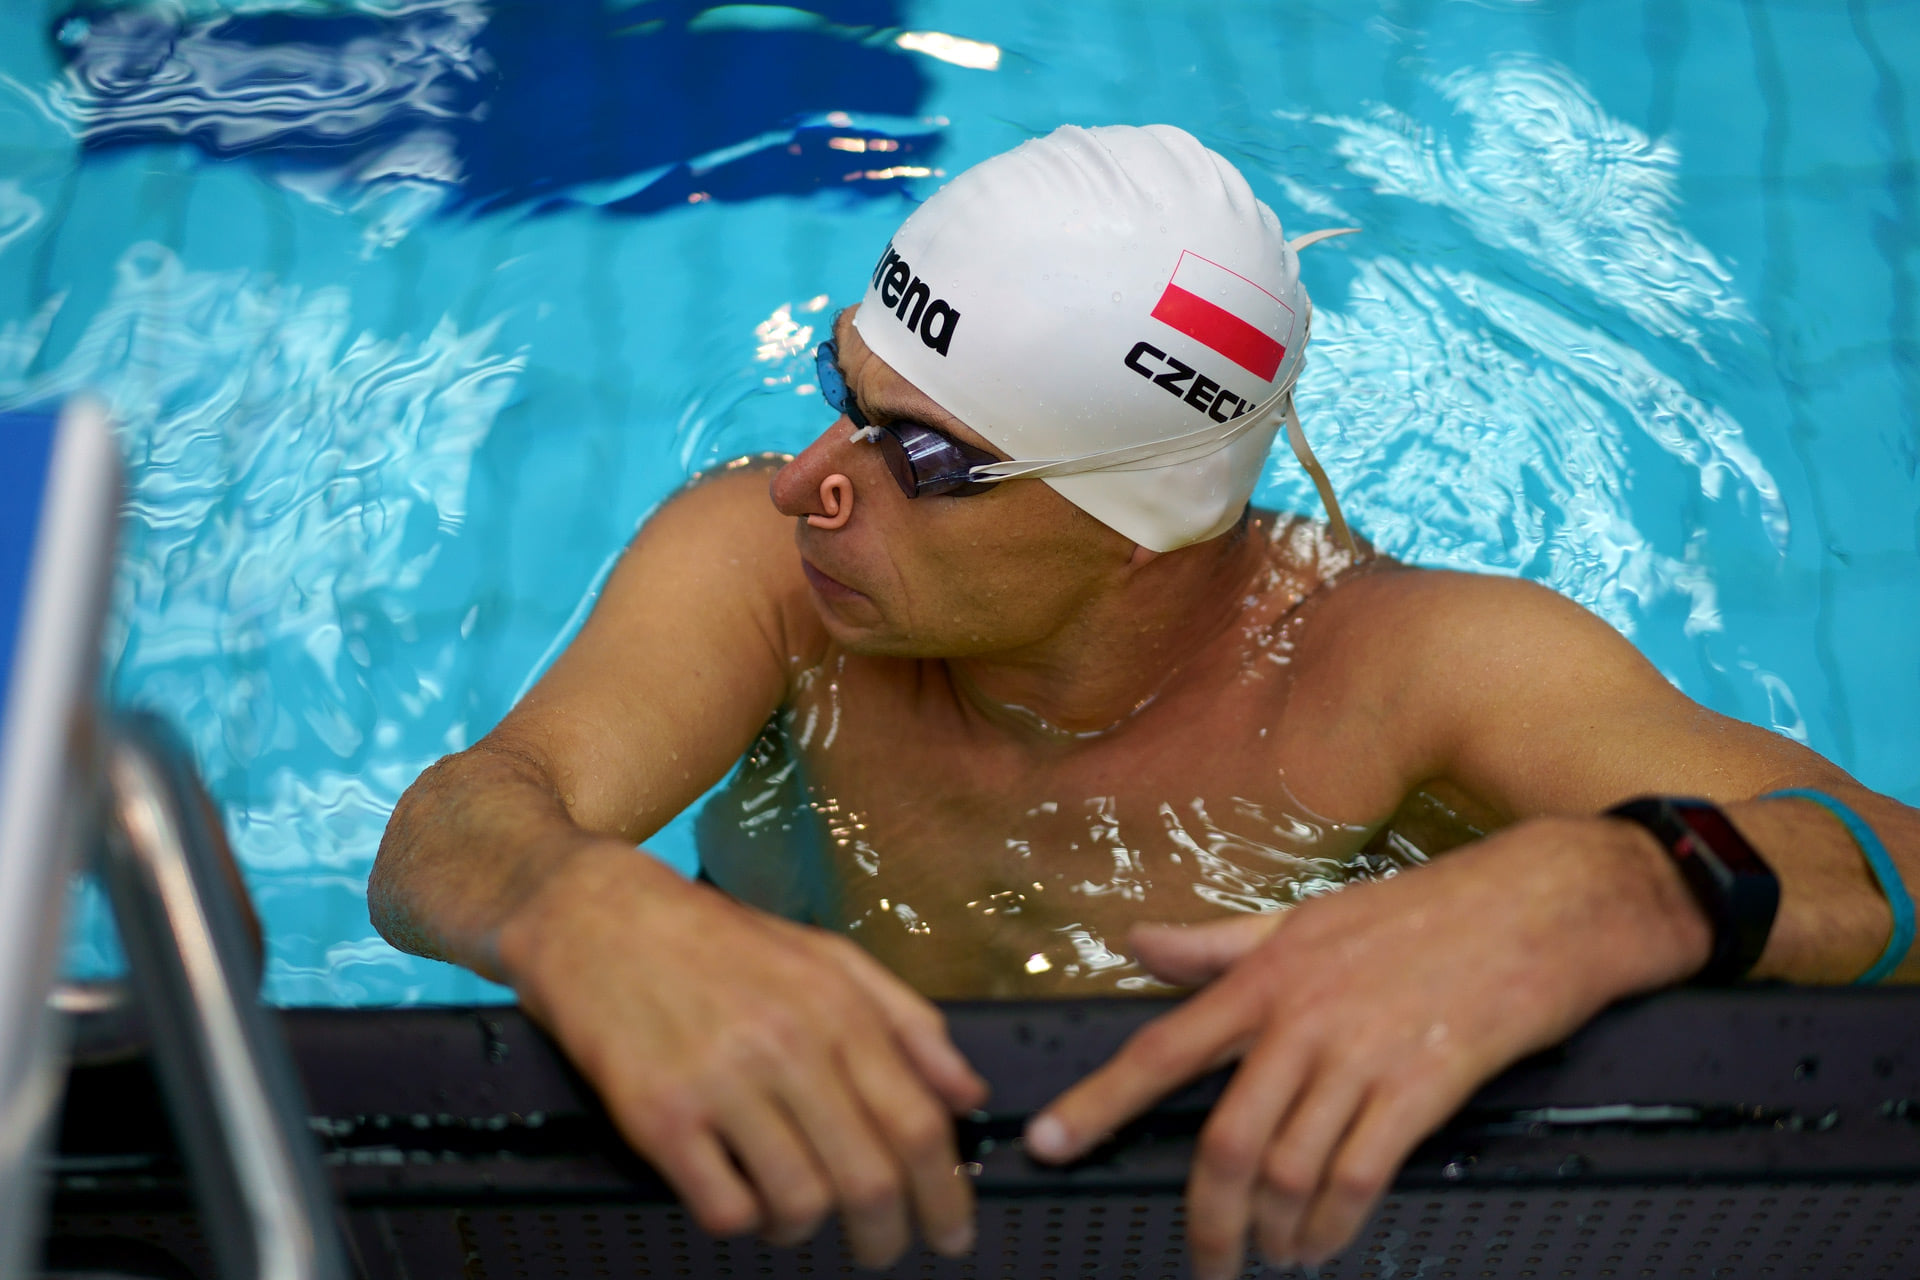 Na zdjęciu znajduje się mężczyzna (Jacek Czech) w czepku pływackim. Przebywa w basenie, opierając się o brzeg przy drabince.